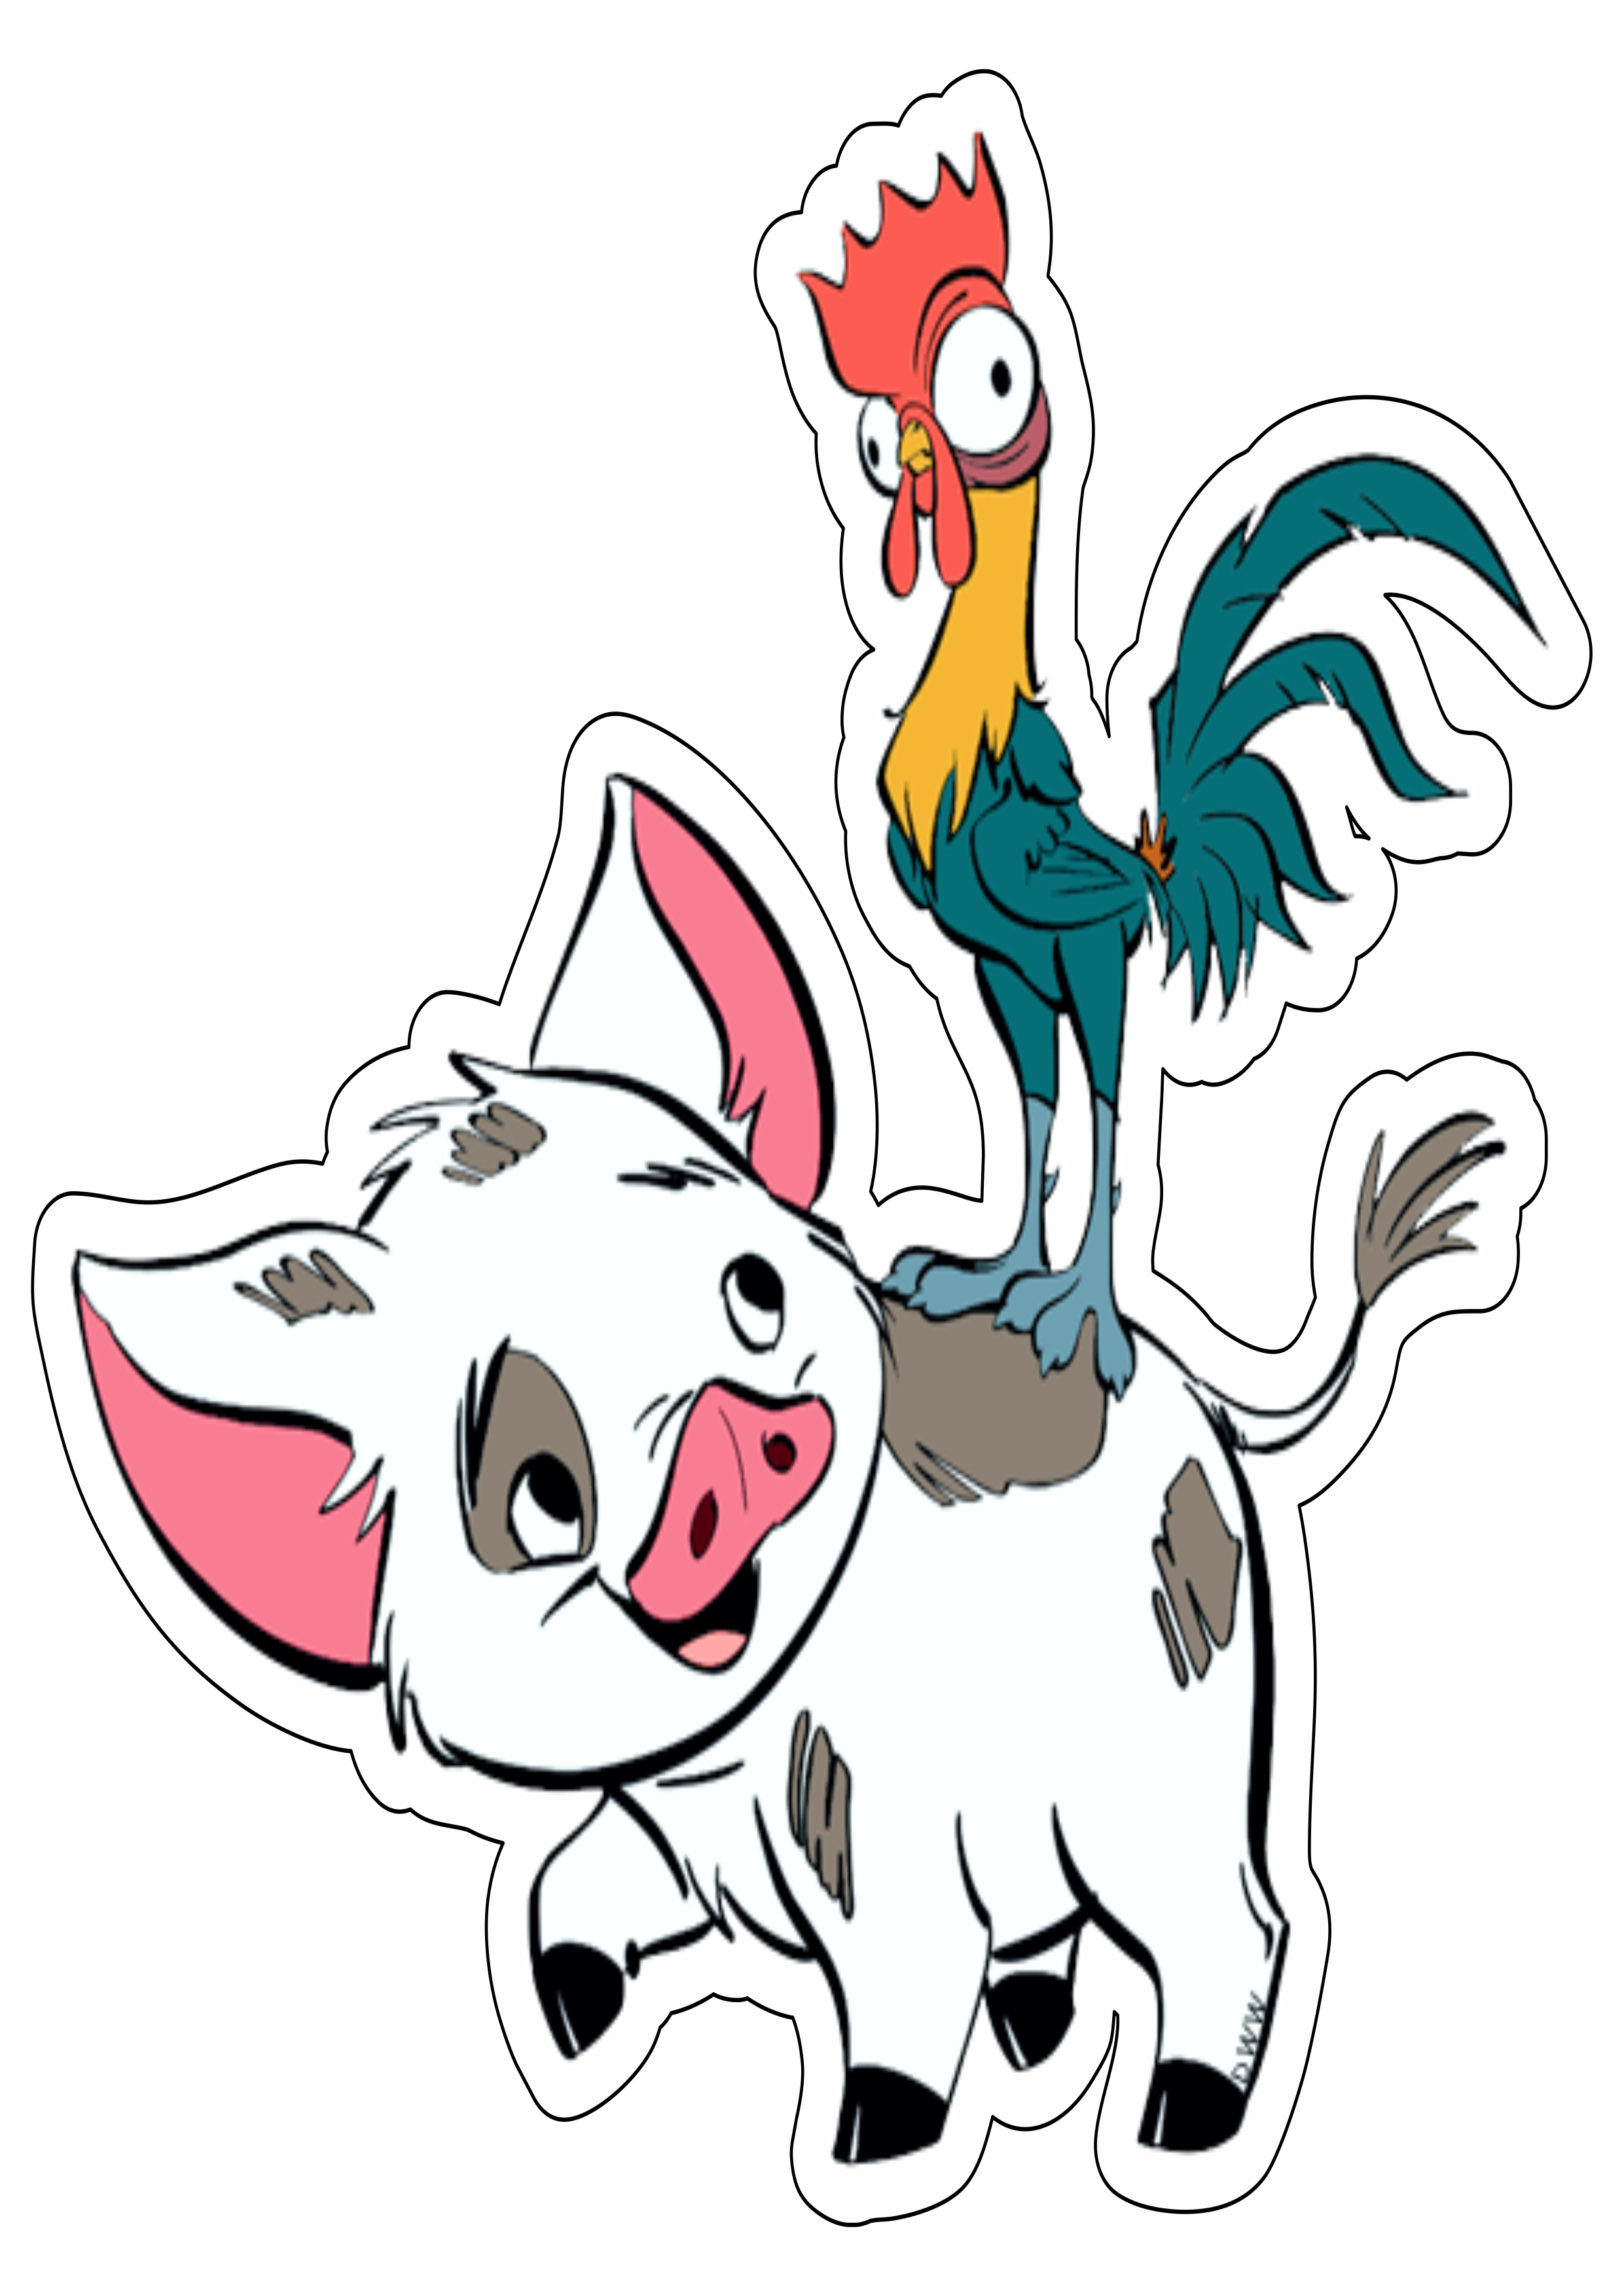 Porquinho e galinho da Moana desenho simples filme infantil animação disney personagem fictício ilustração artes gráficas png